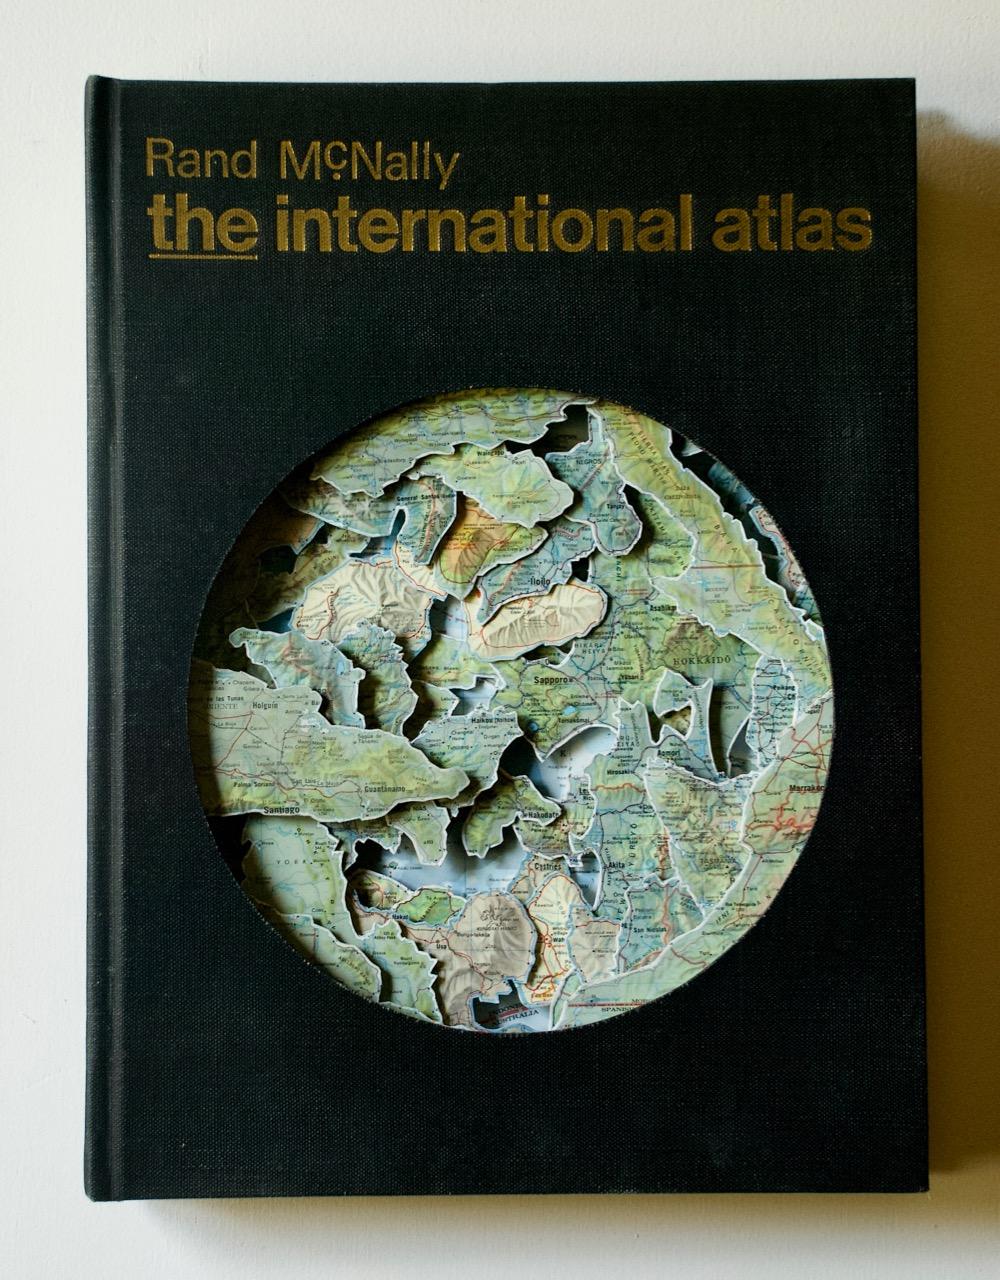 The International Atlas - Mixed Media Art by Tony Dagradi